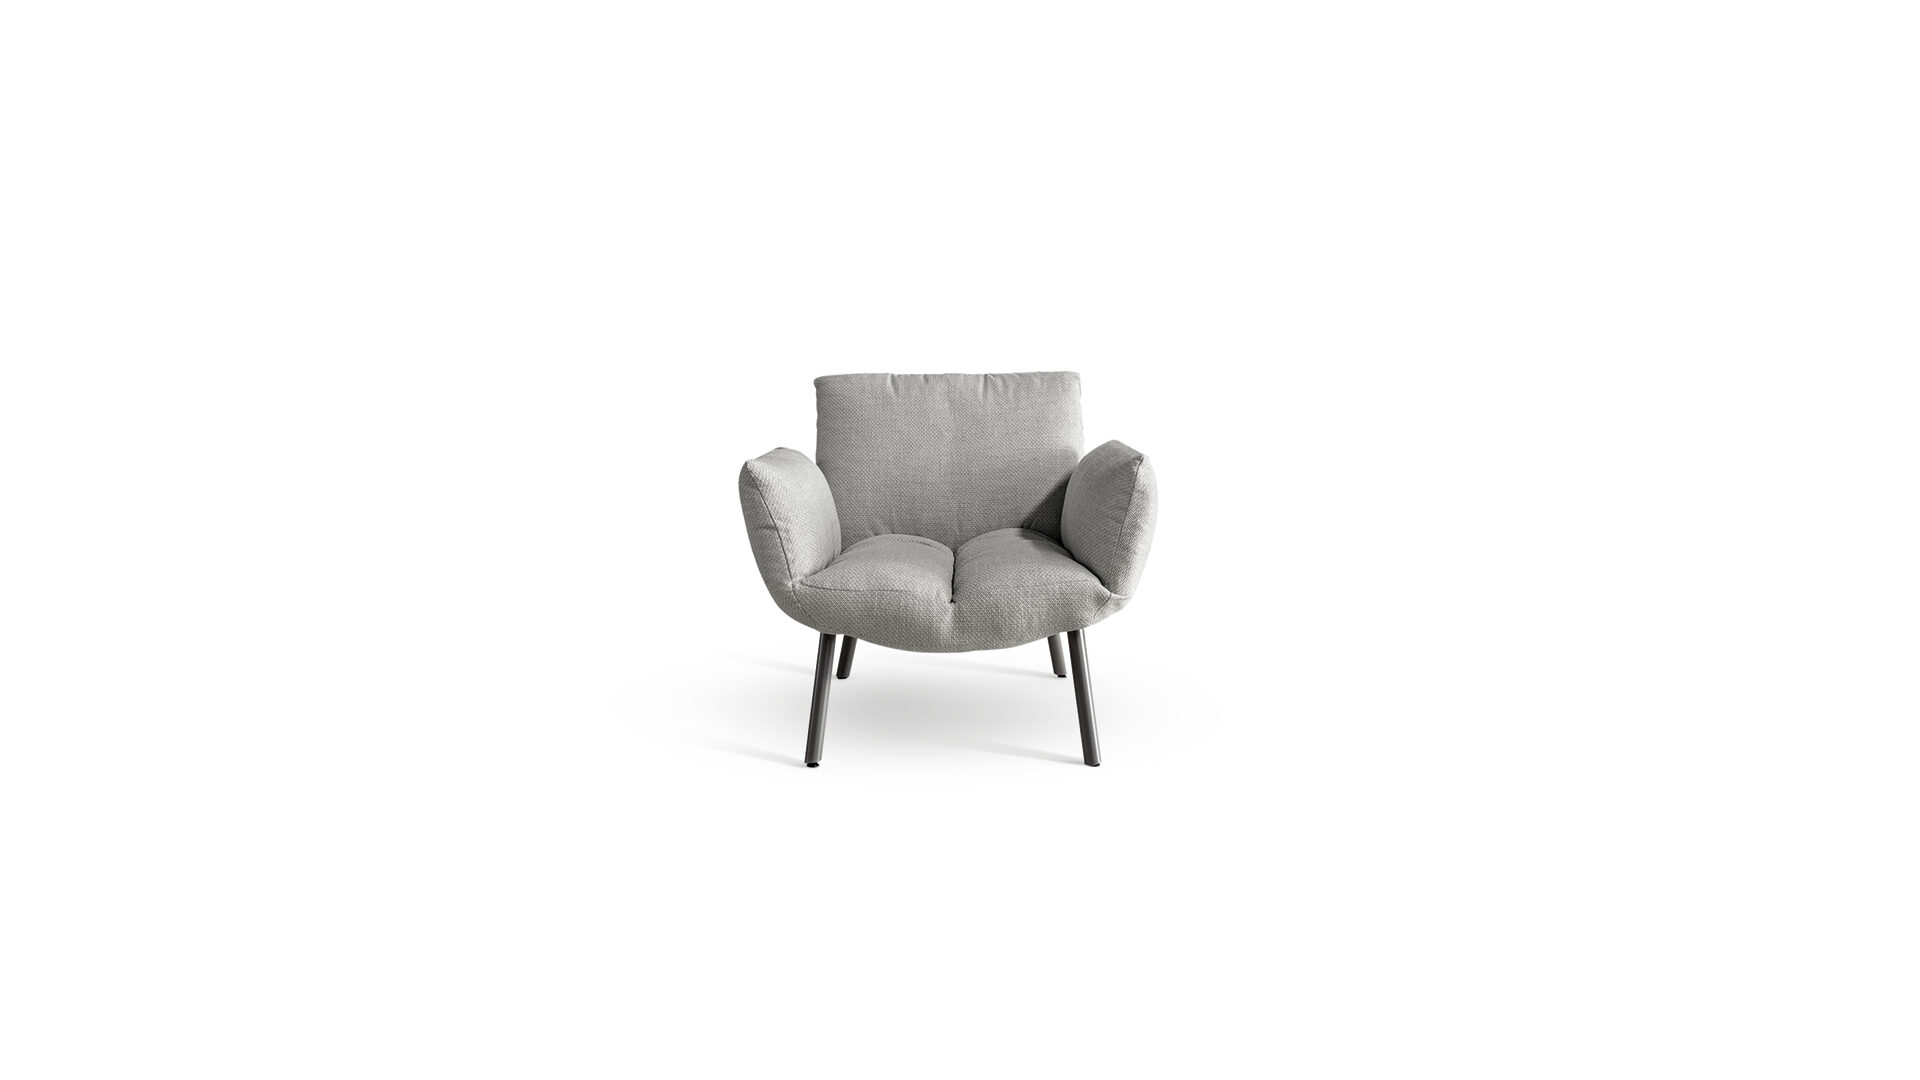 bonaldo-poltrone-pil-armchair-foto-2-jpg